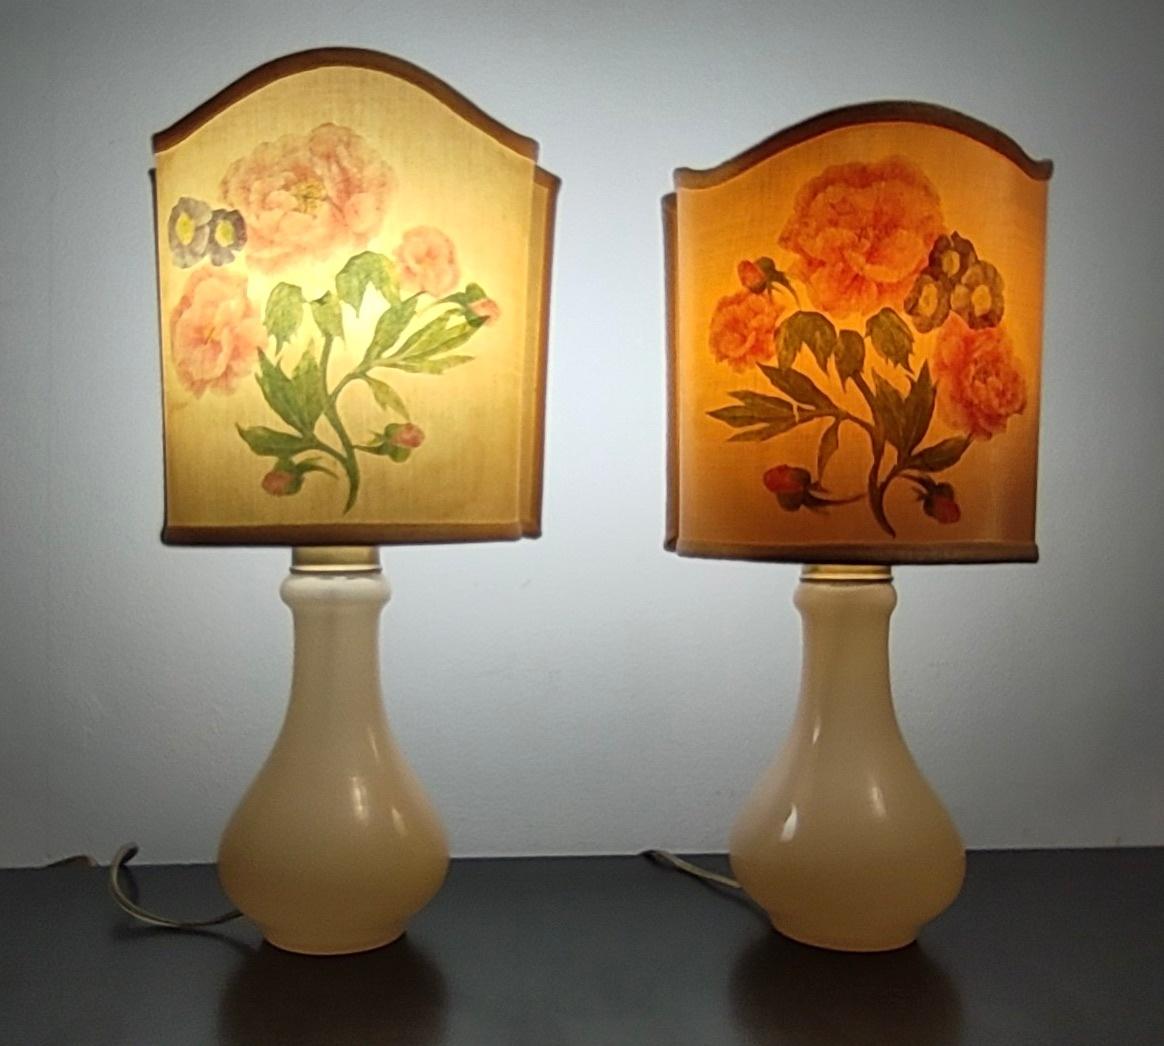 Hergestellt in Italien, 1960er Jahre
Diese Tischlampen sind aus Murano-Glas mit Messingelementen gefertigt. 
Die Lampenschirme aus Stoff sind mit einem Blumenmuster versehen.
Diese Lampen können leichte Gebrauchsspuren aufweisen, da sie Vintage